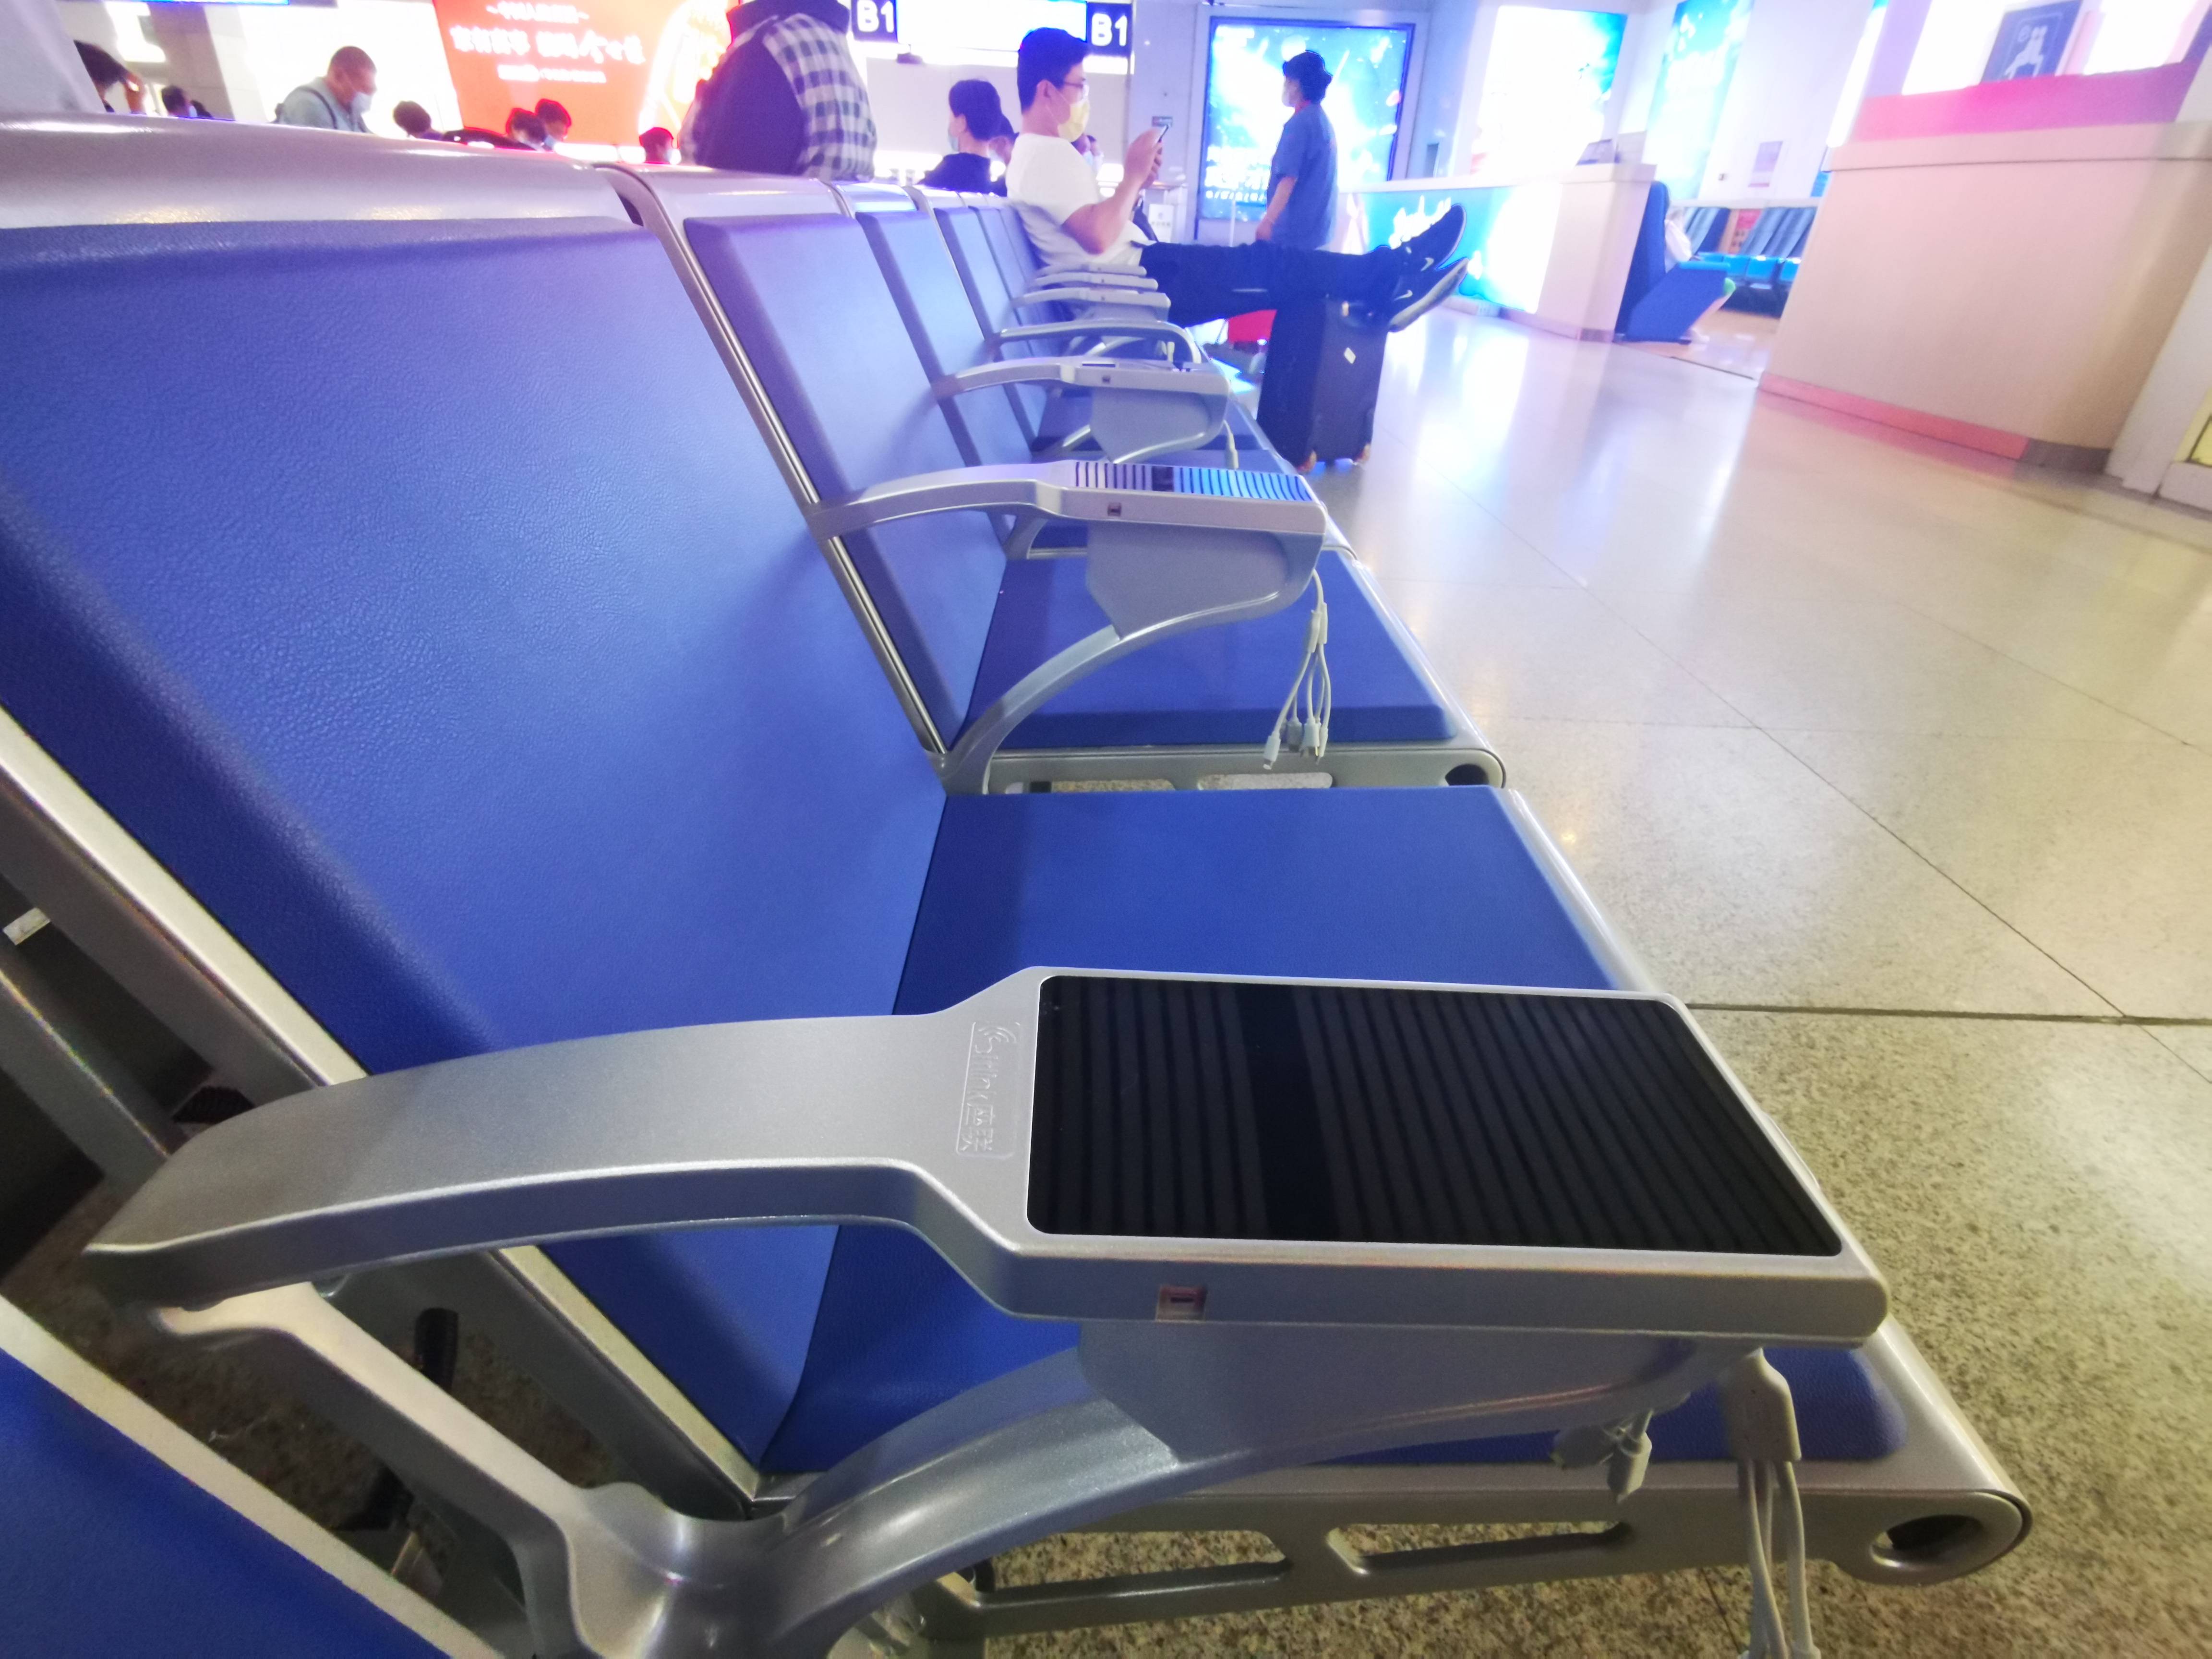 有显示屏幕还自带手机充电器 济南火车站新座椅亮了